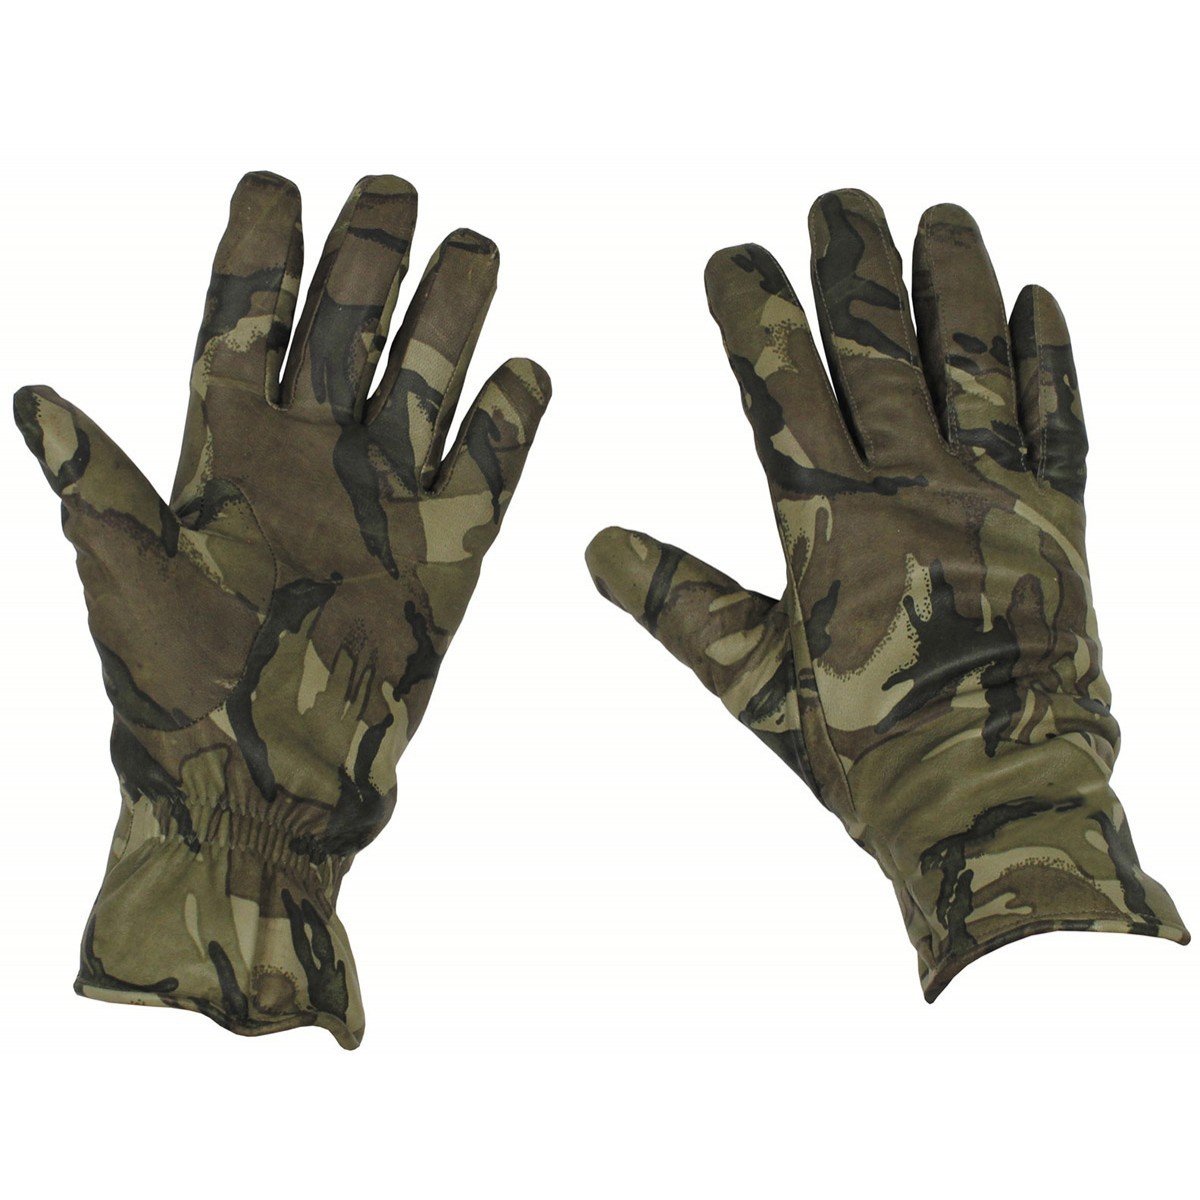 Rukavice kožené zateplené MK II Combat Glove MTP Velká Británie originál Velikost: 10 / L (23-26 cm) použité